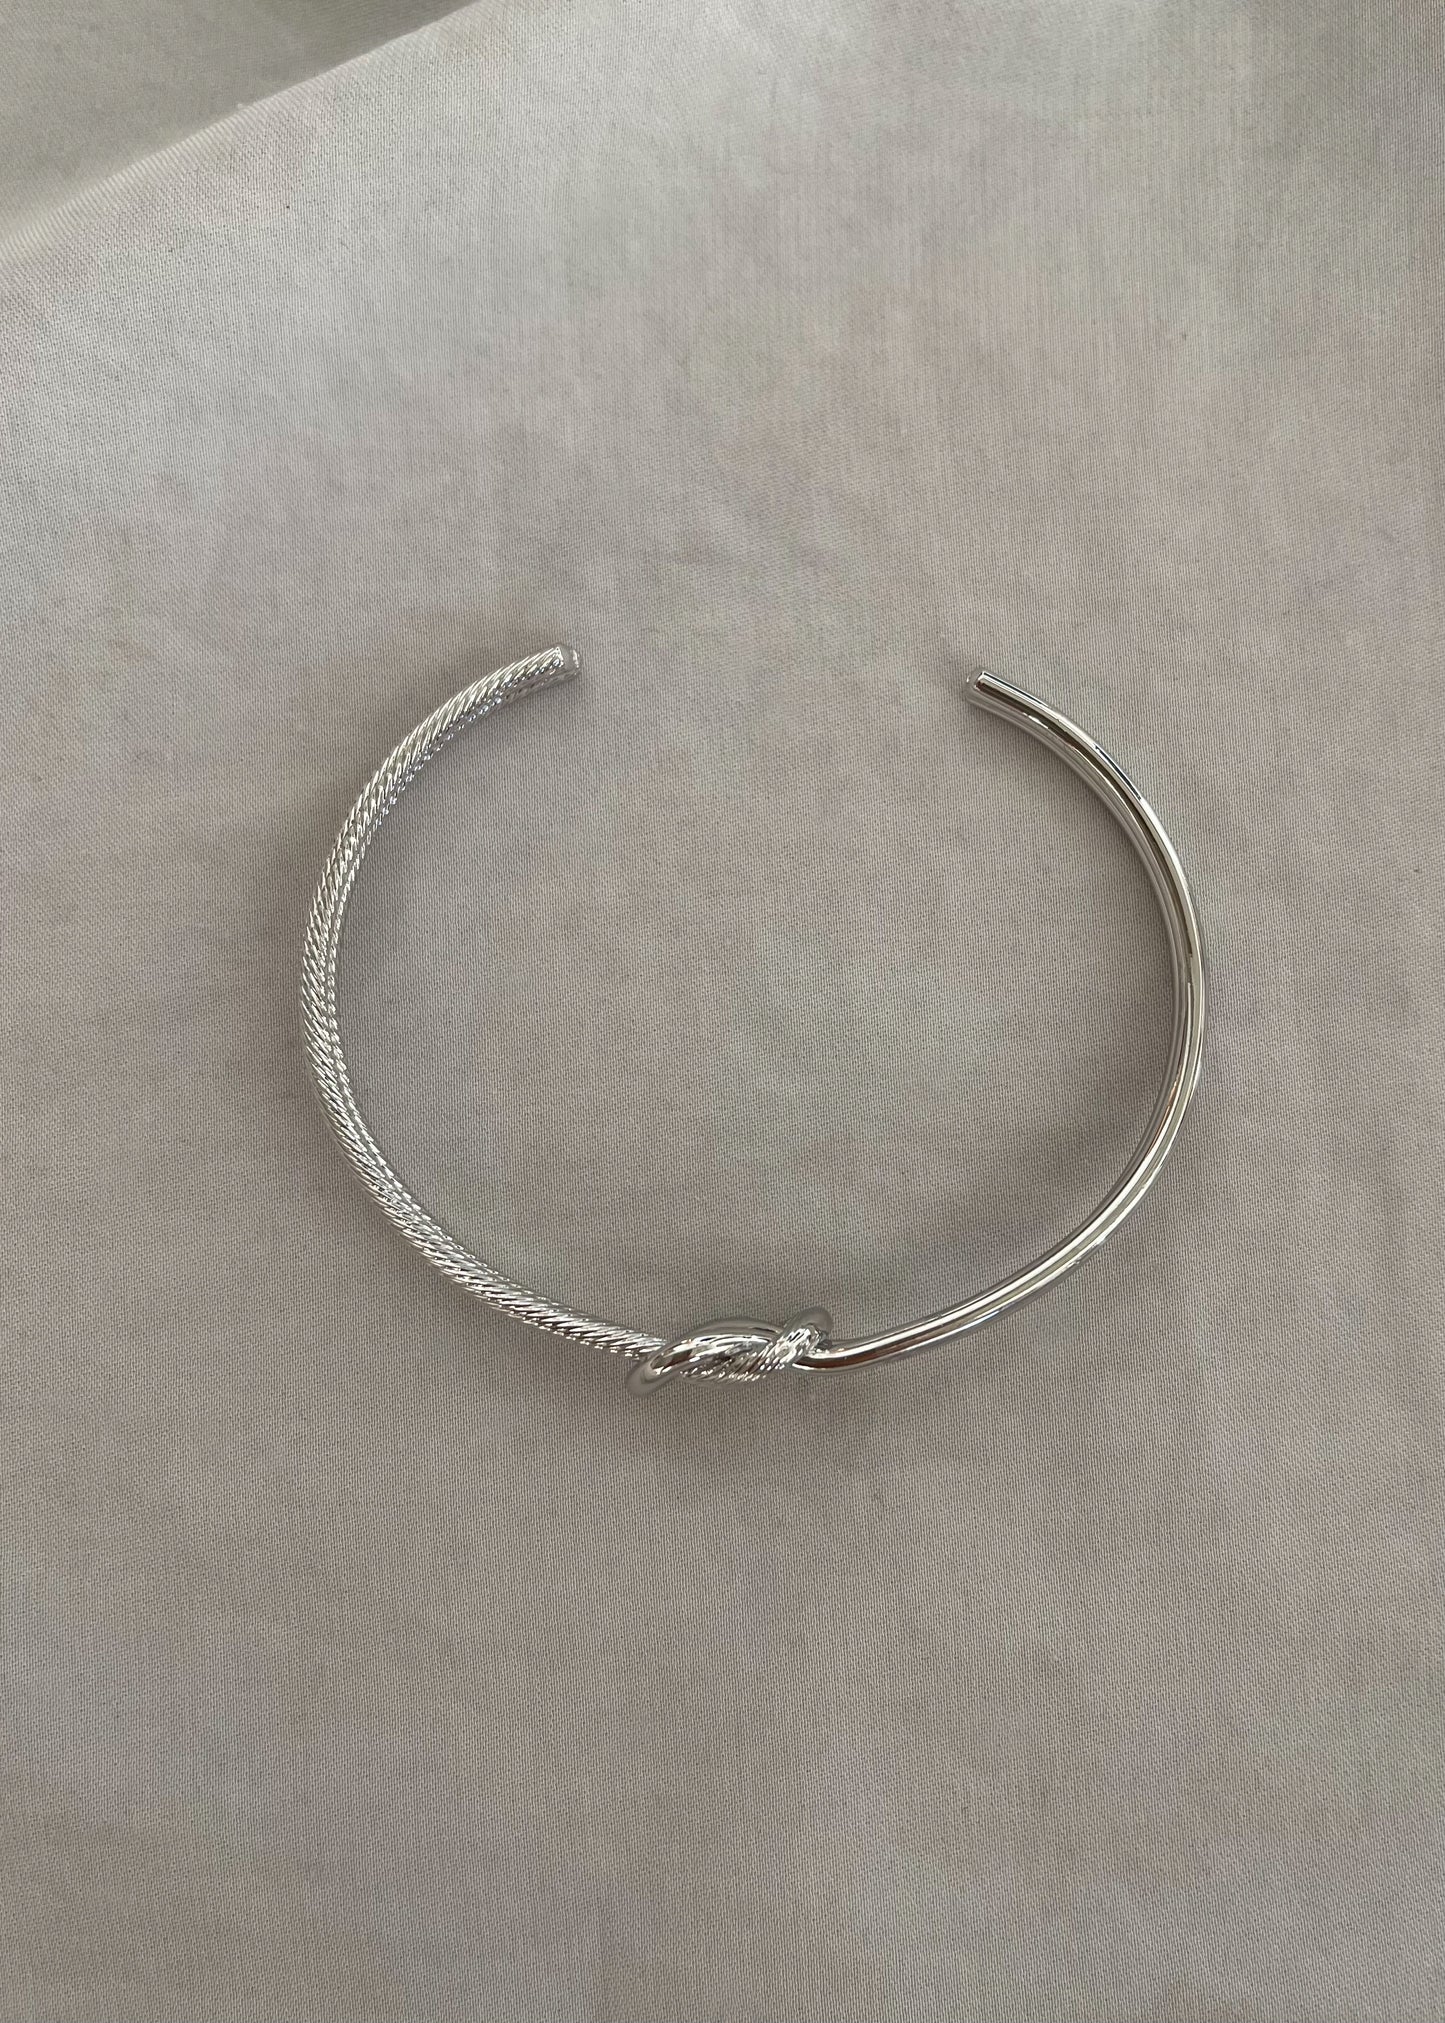 Silver Knotted Bracelet